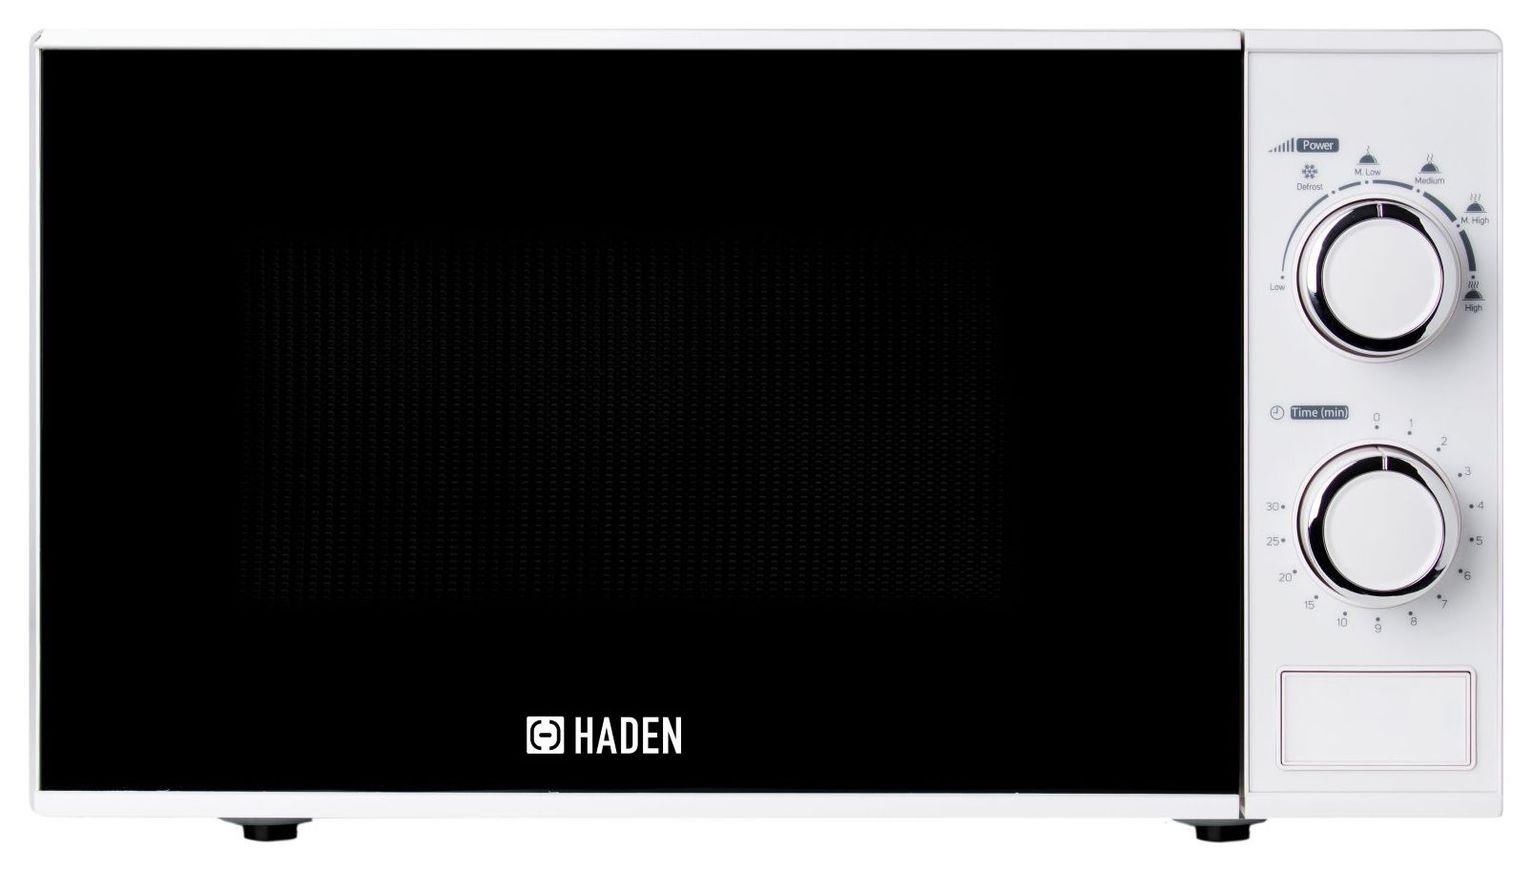 Haden 700W Standard Microwave 199676 - White